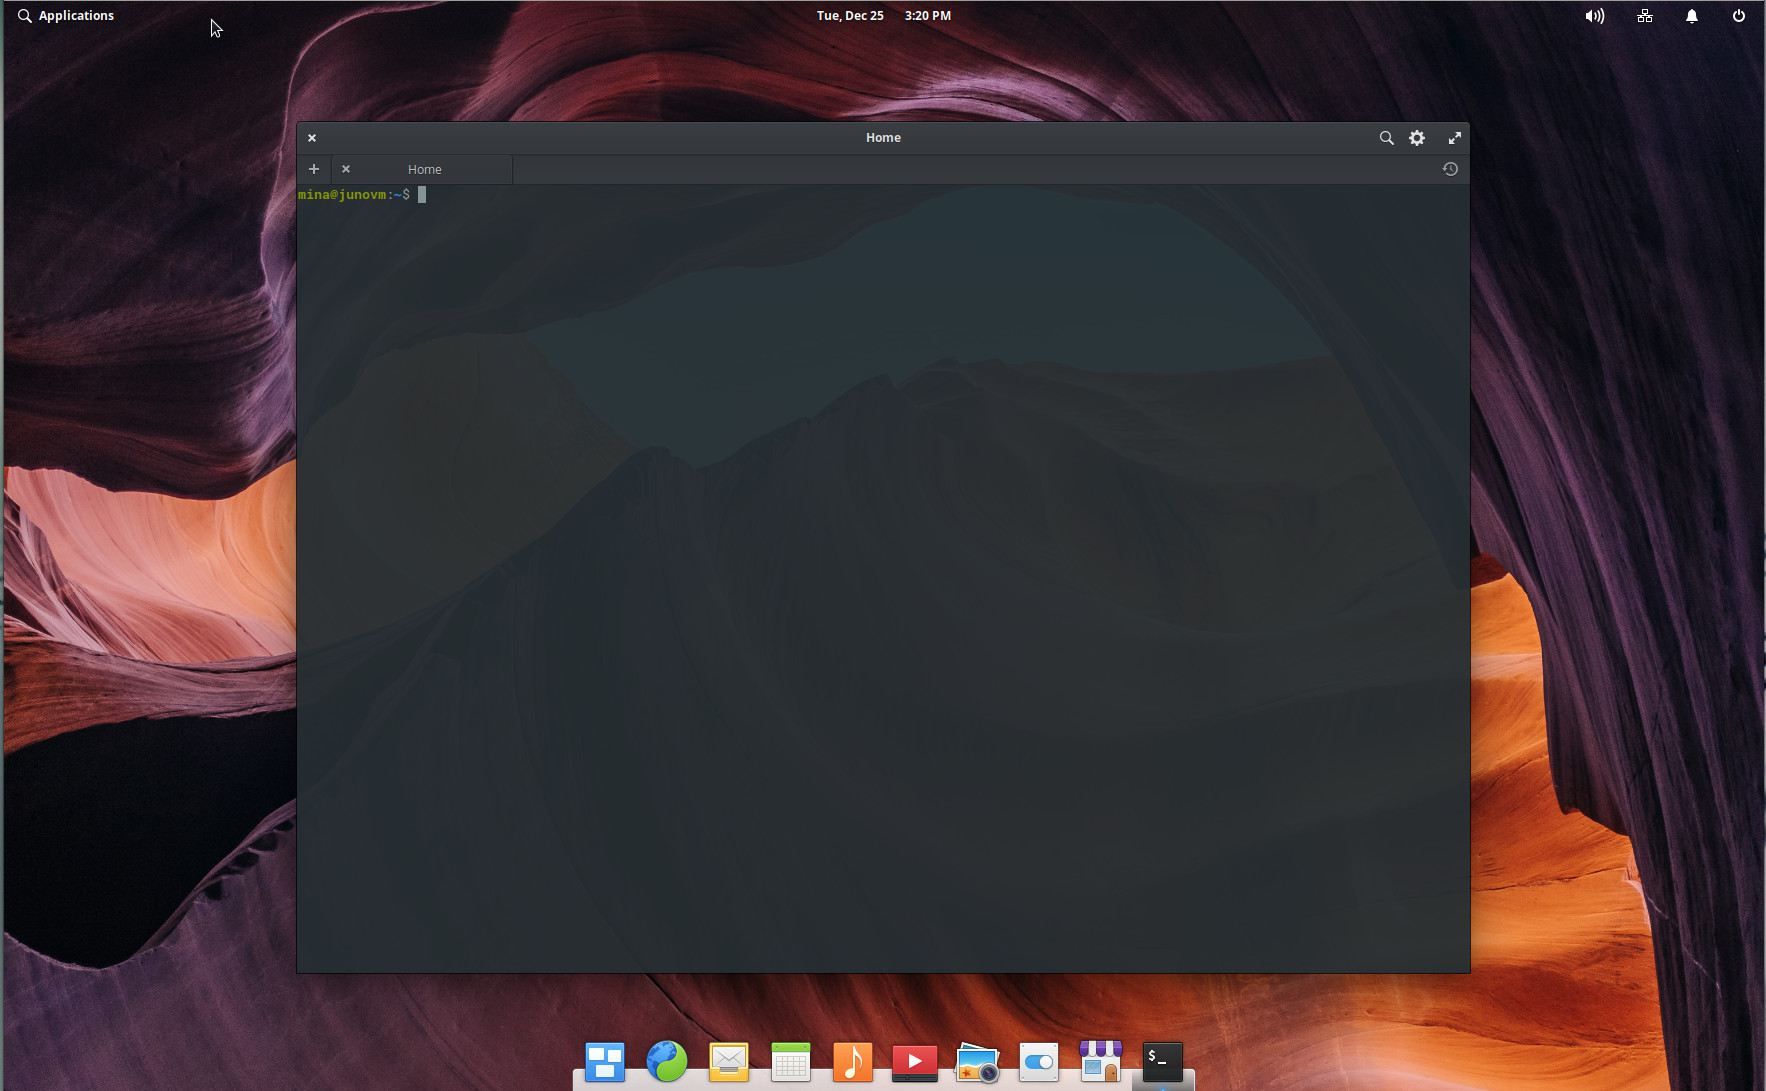 Снимок экрана: окно терминала Linux.